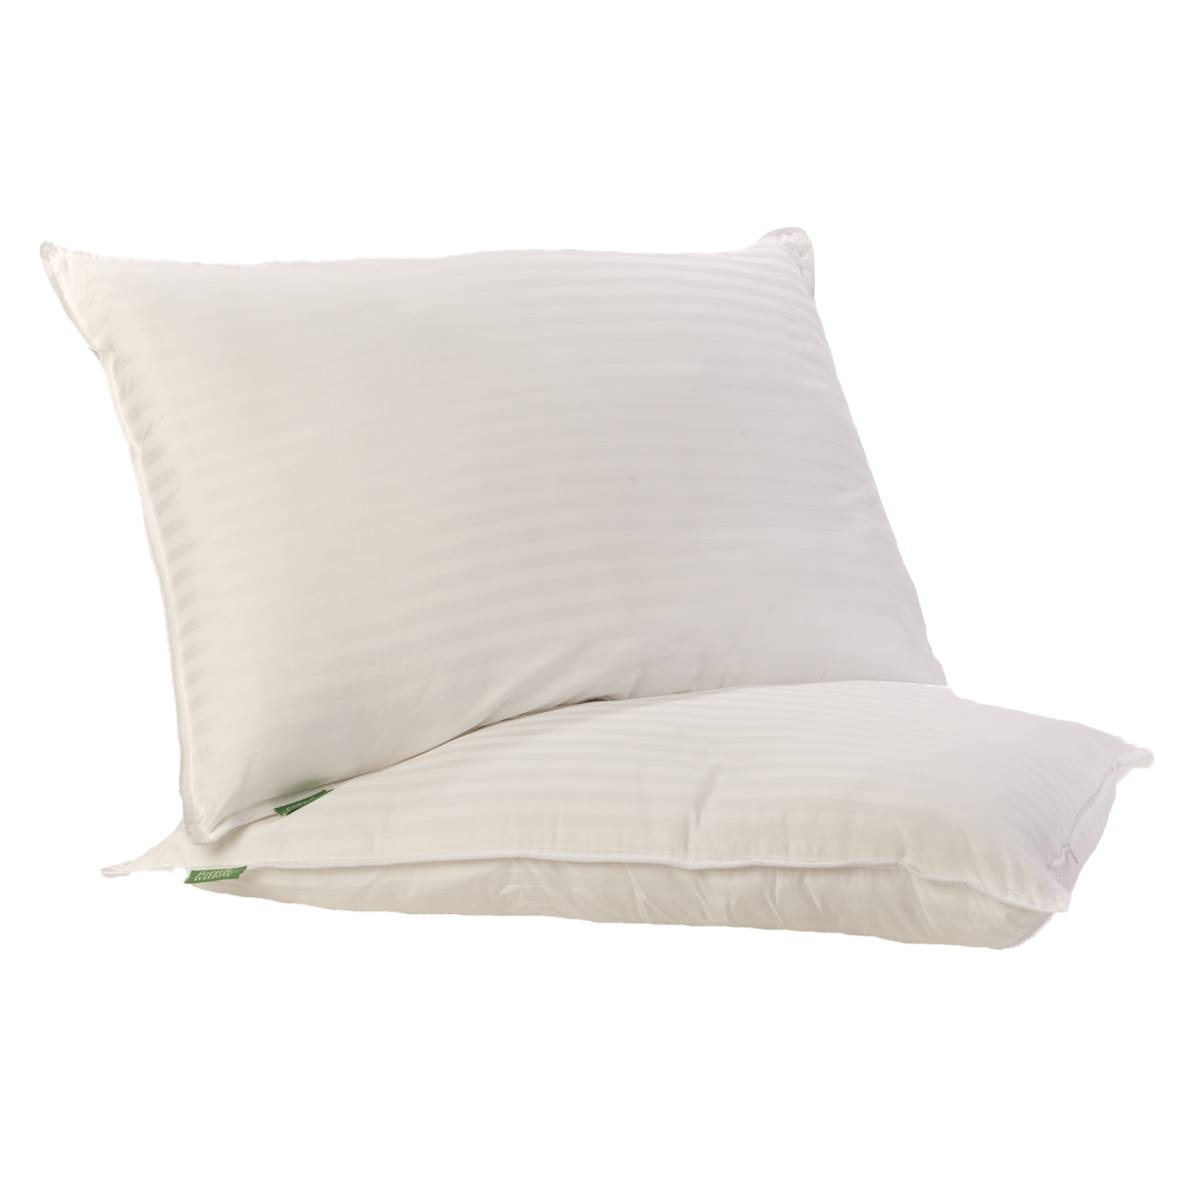 Fern & Willow 2pk. Pillows